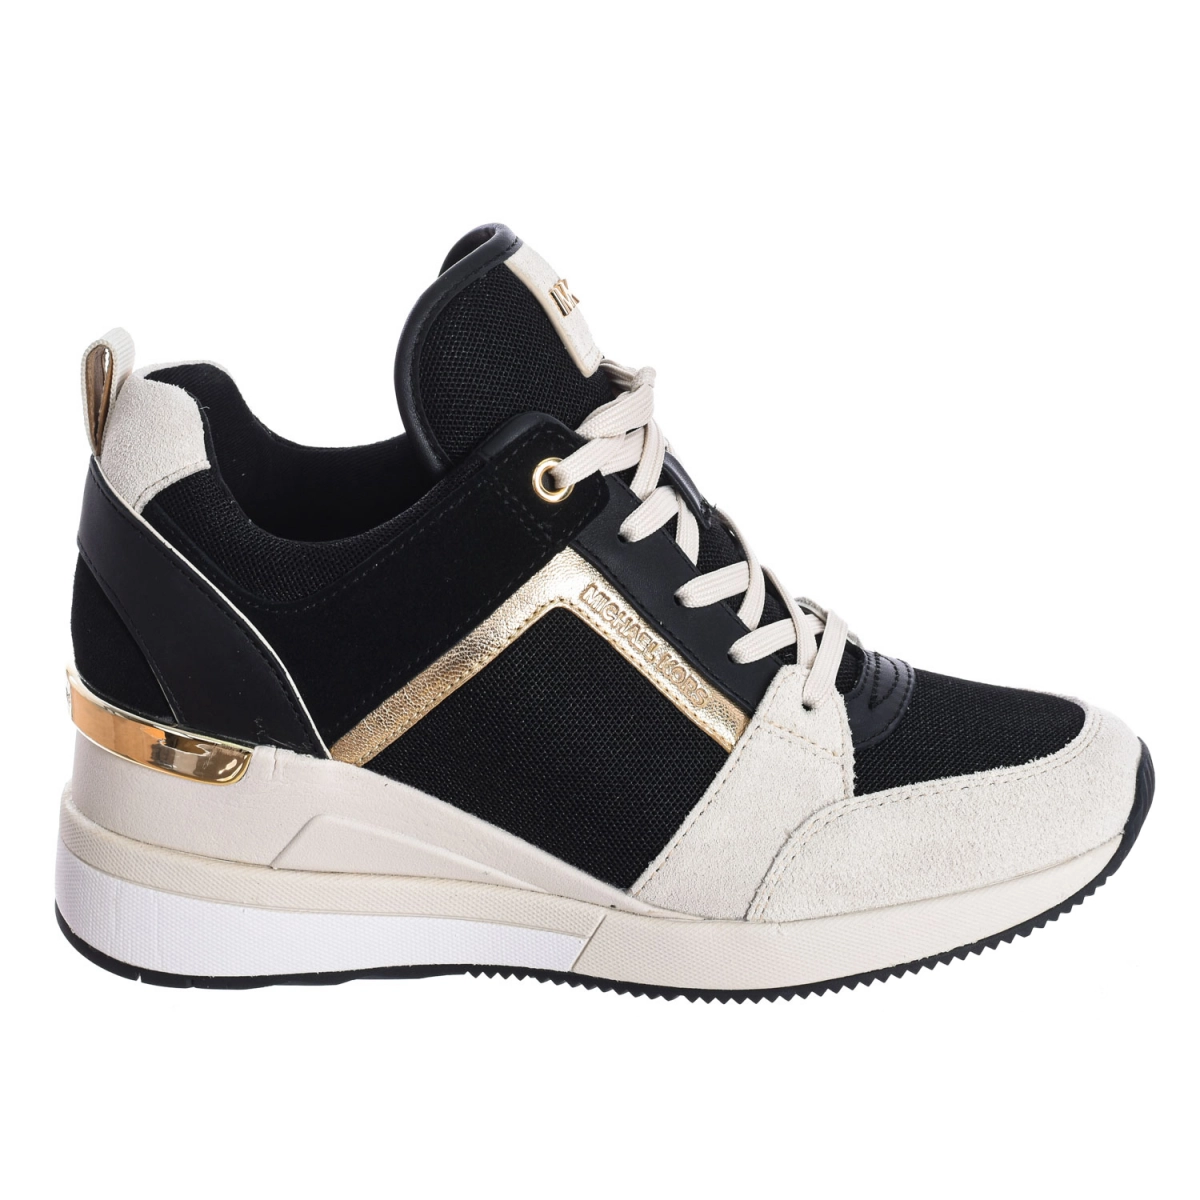 Zapatilla Sneaker Georgie tricolor Michael Kors R9GEFS1S mujer Talla: 39 Color: Negro R9GEFS1S-LT-CRM-MULTI.39